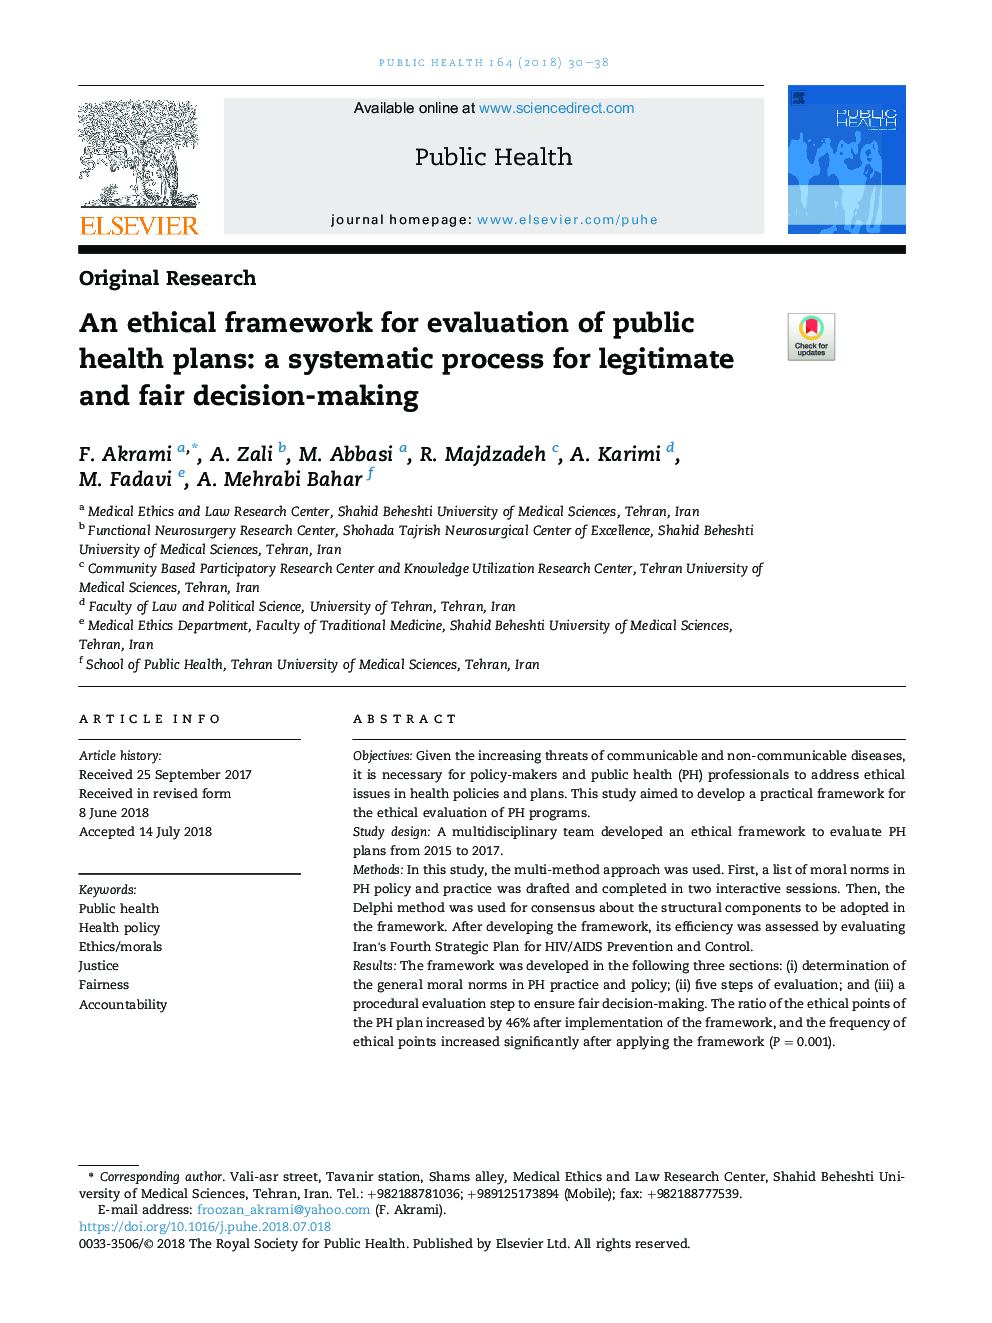 چارچوب اخلاقی برای ارزیابی برنامه های بهداشت عمومی: یک فرآیند سیستماتیک برای تصمیم گیری مشروع و منصفانه